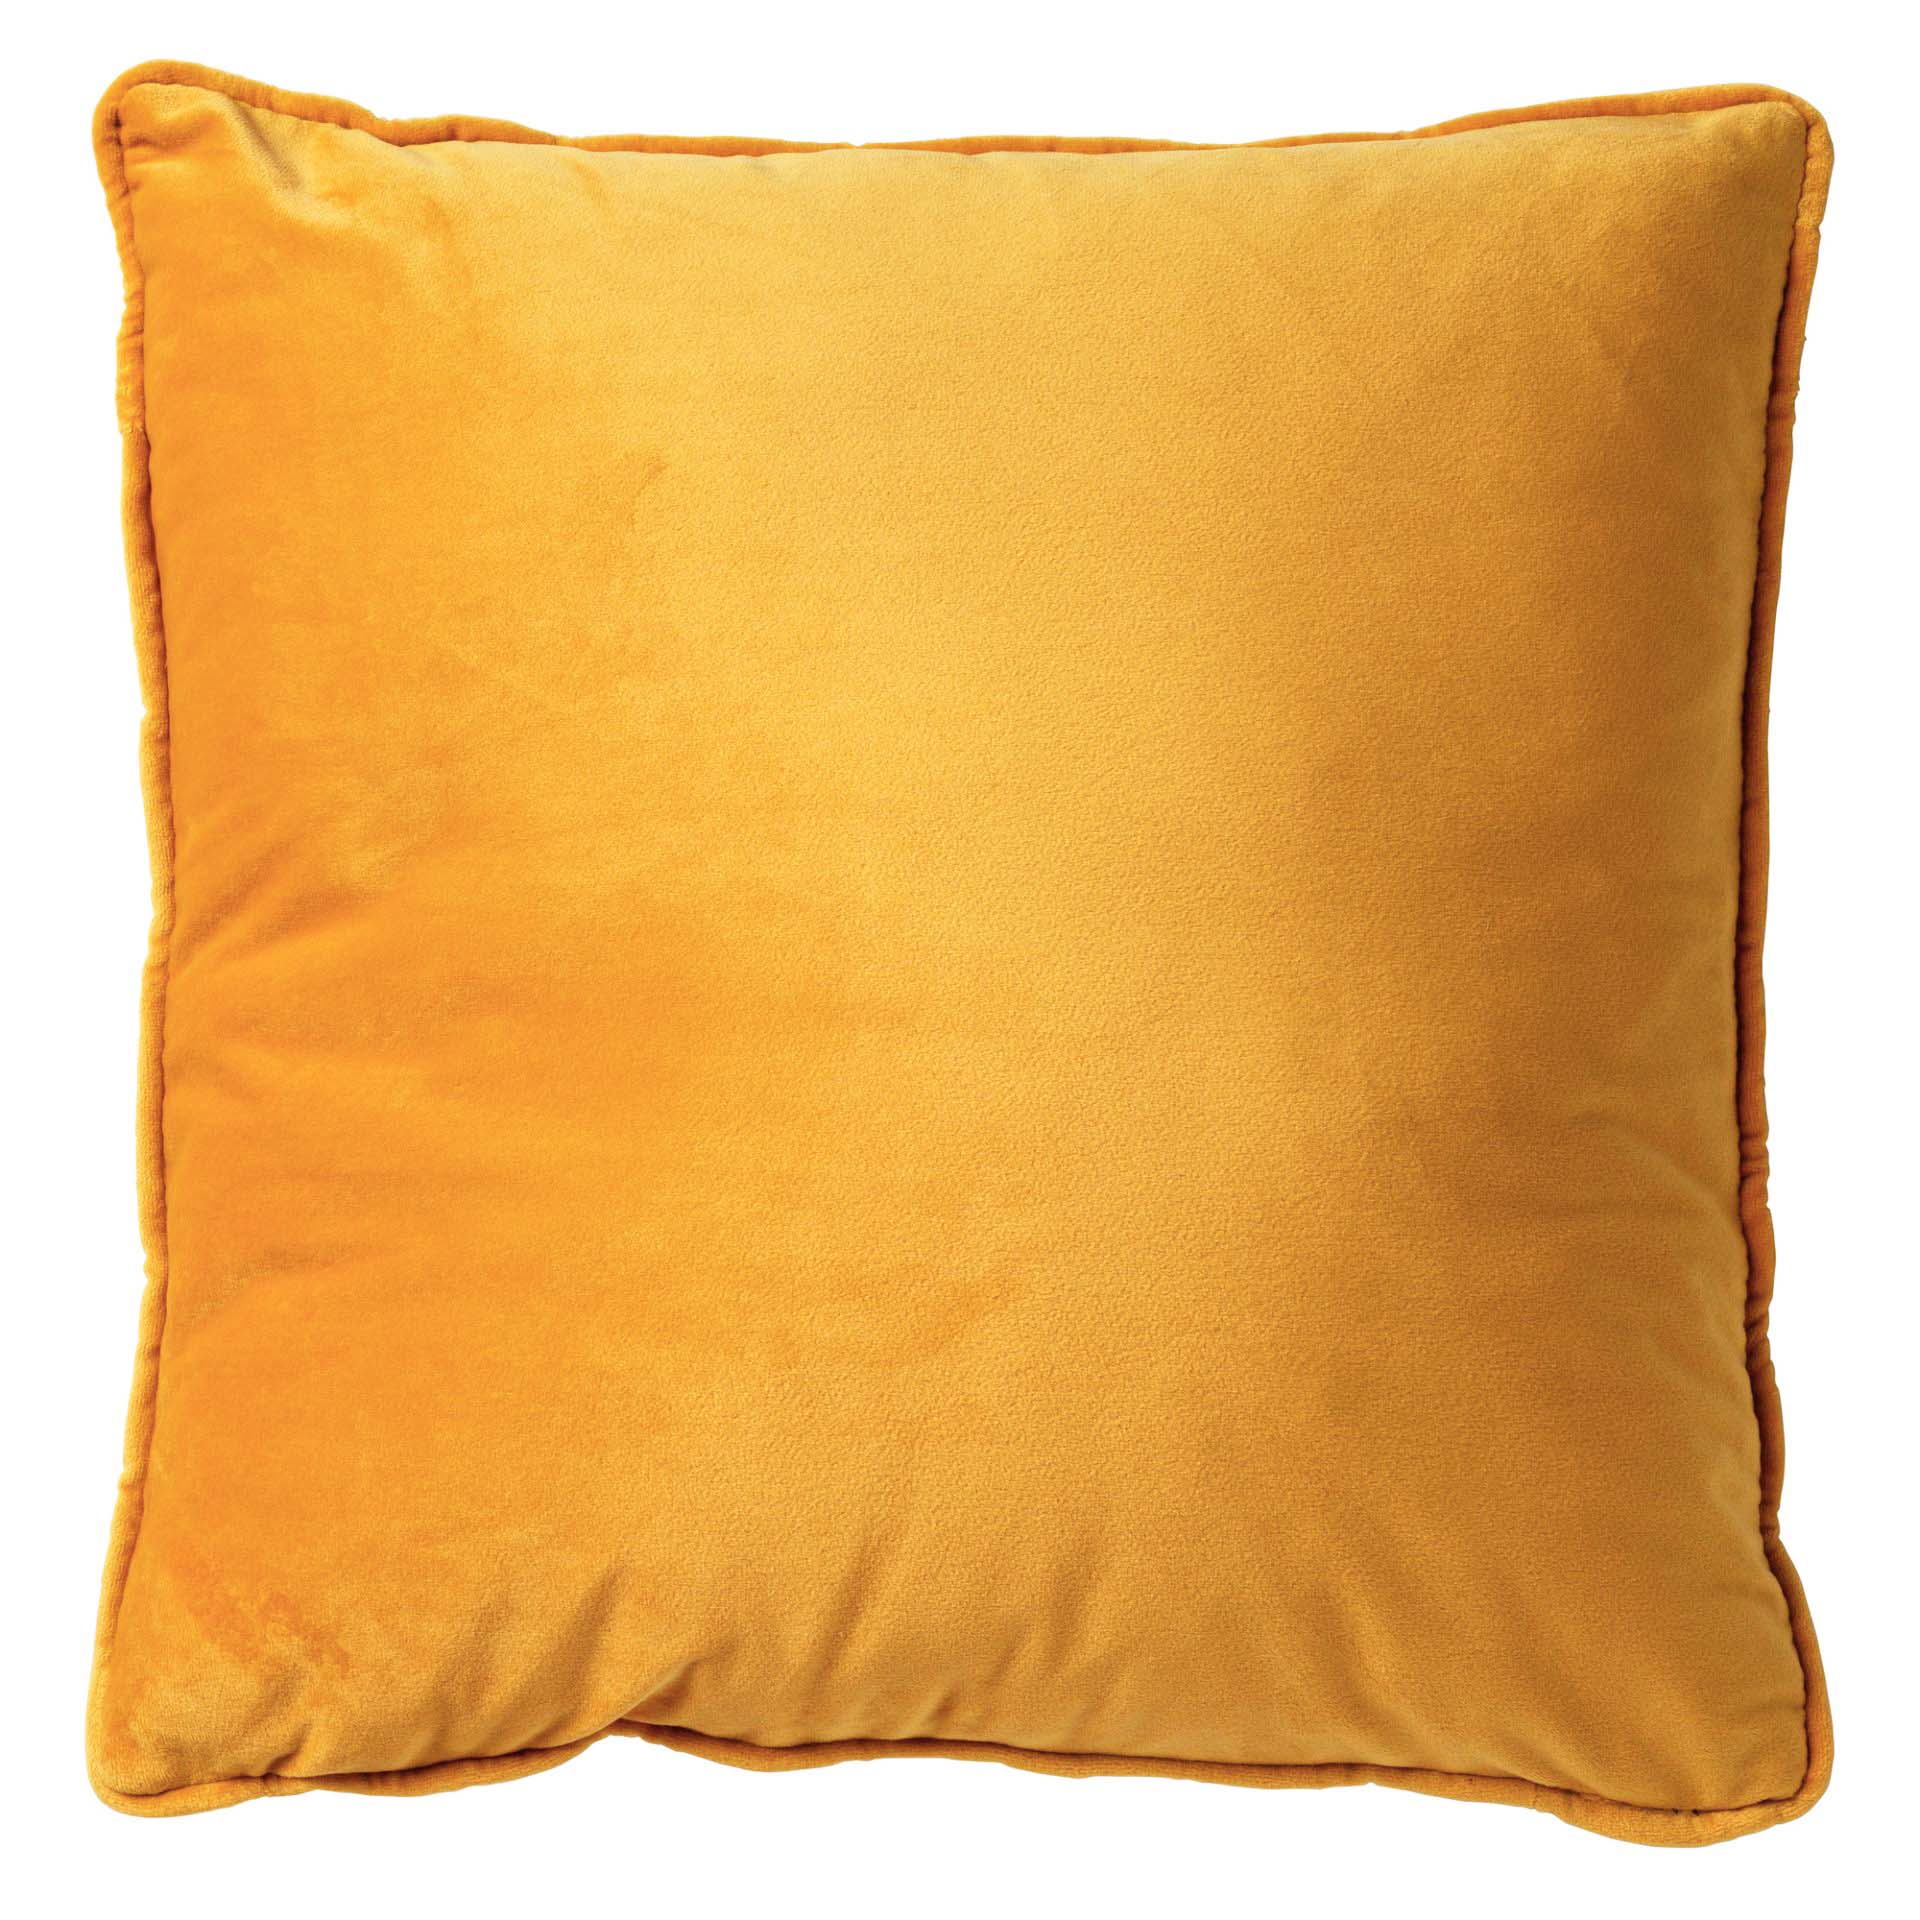 FINN - Cushion 60x60 cm Golden Glow - yellow-ochre